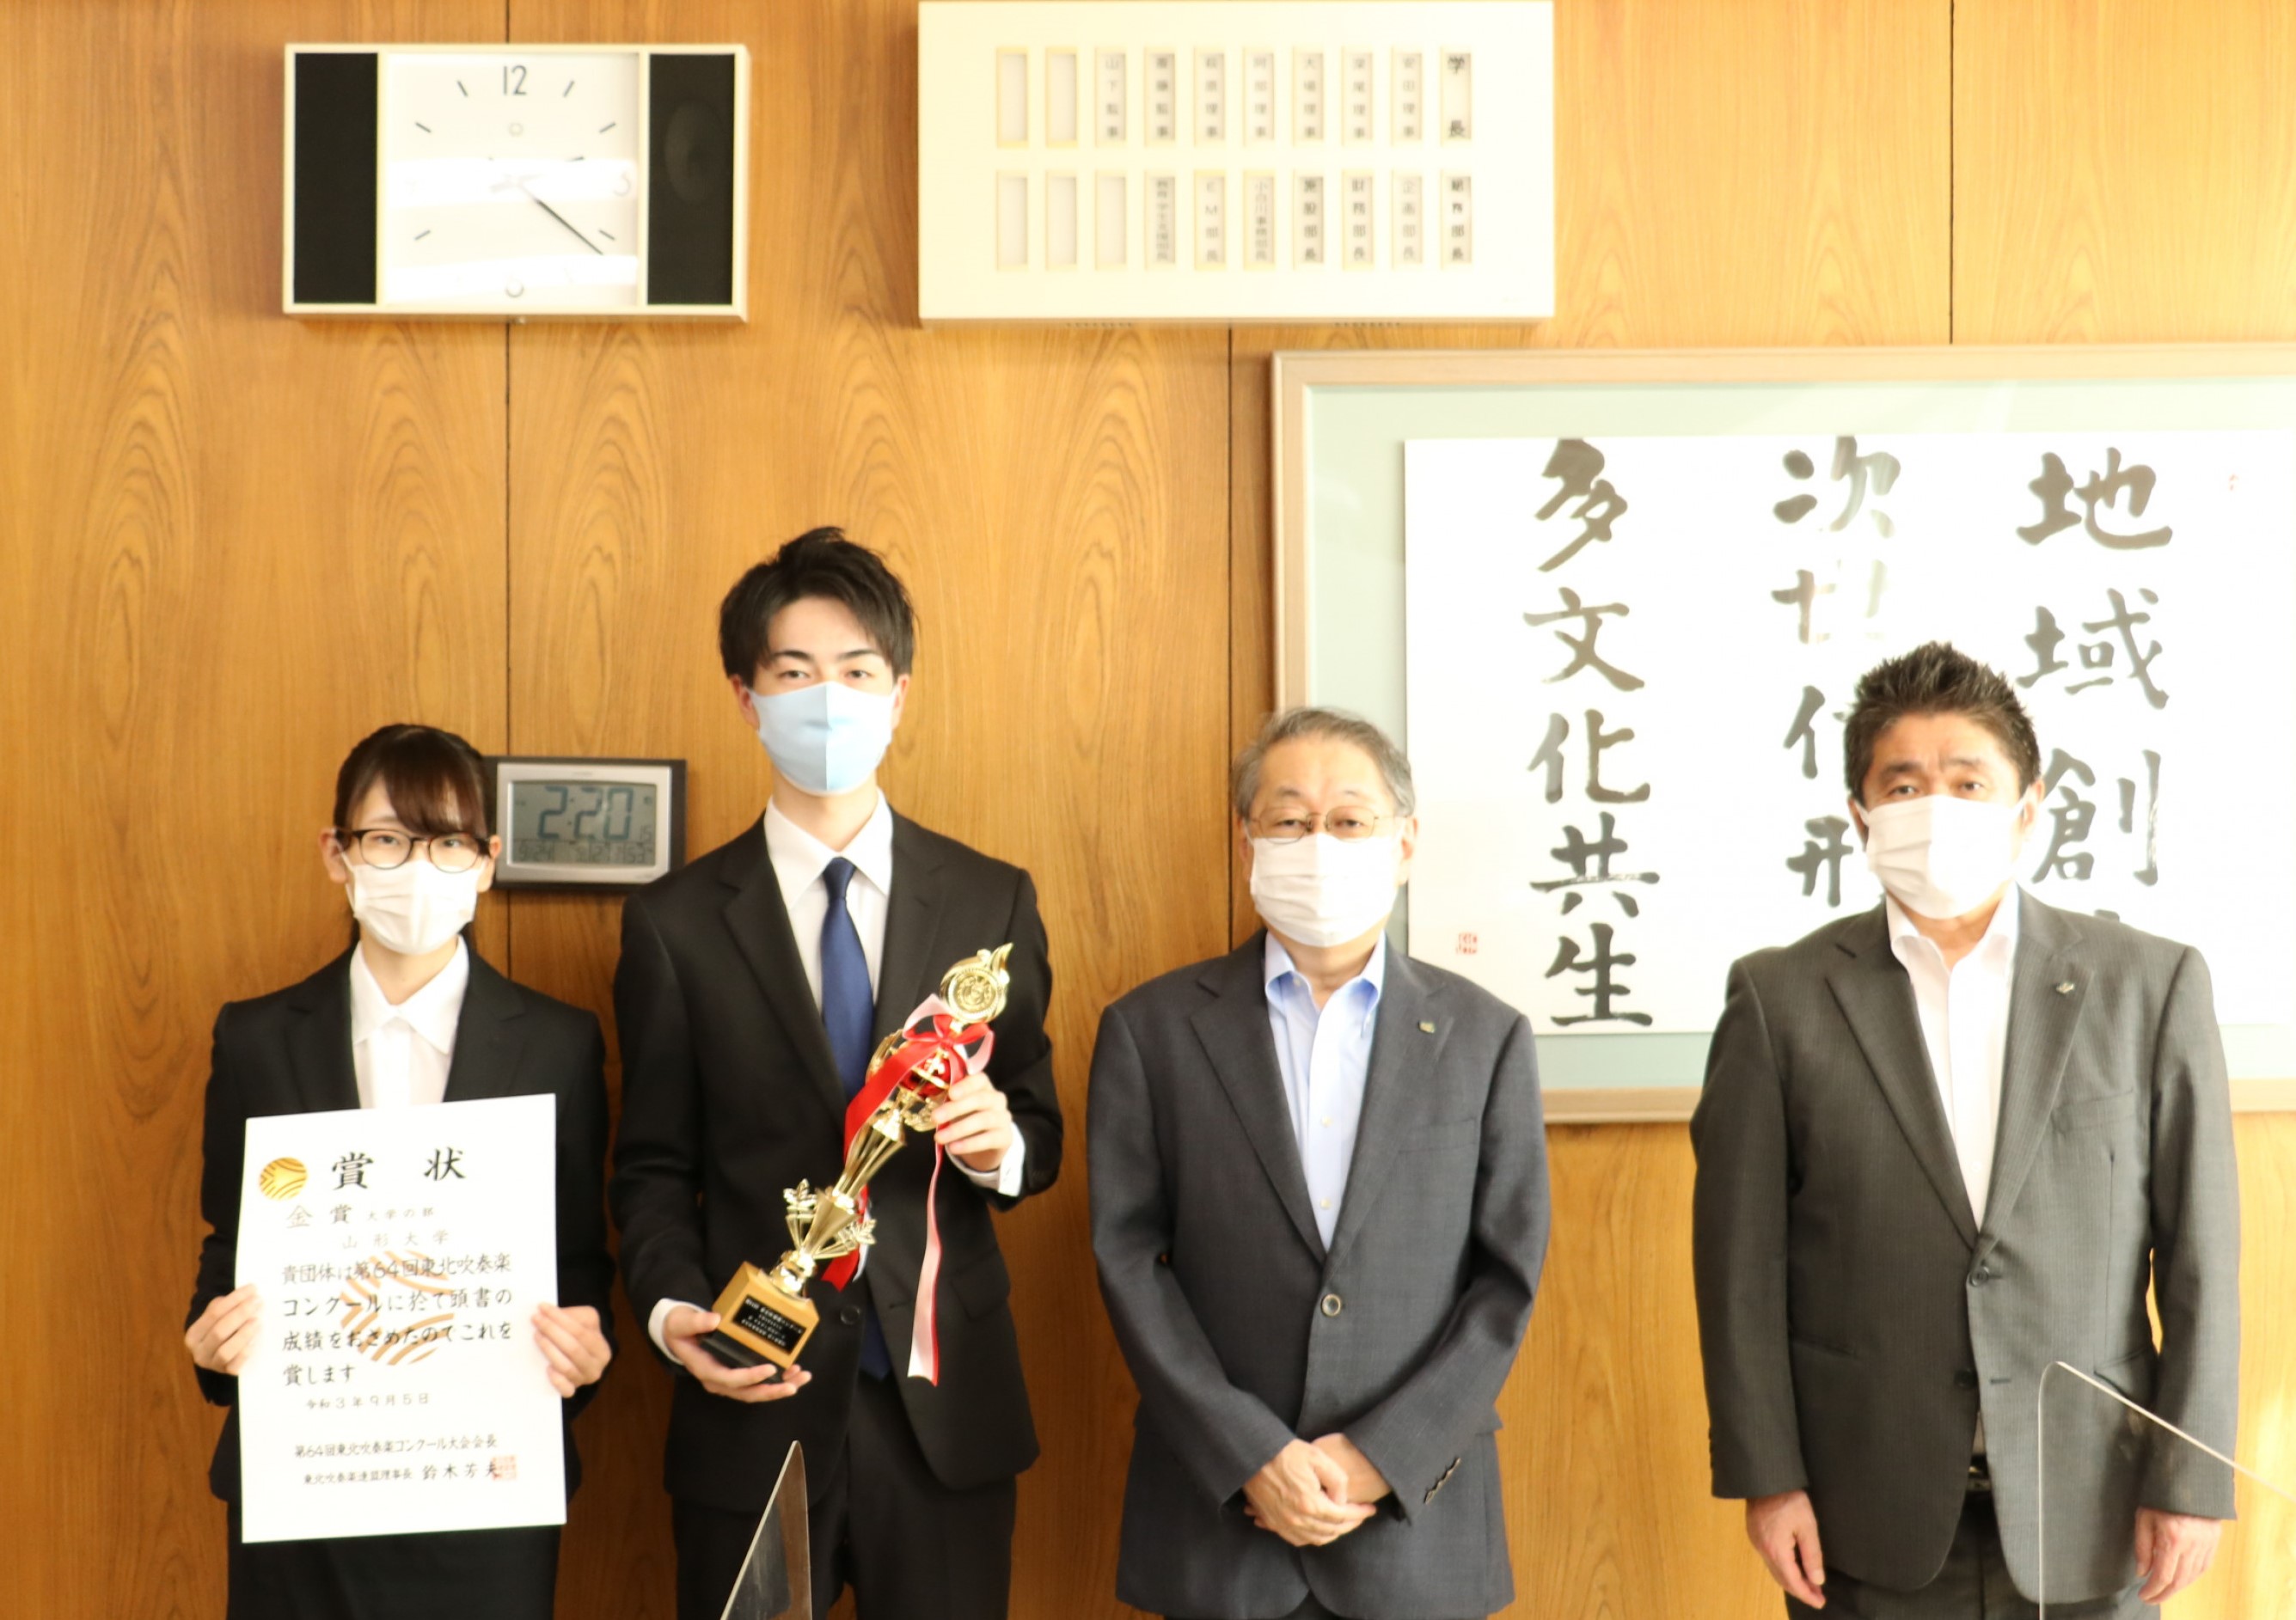 左から及川さん、紅花さん、玉手学長、矢作理事の画像